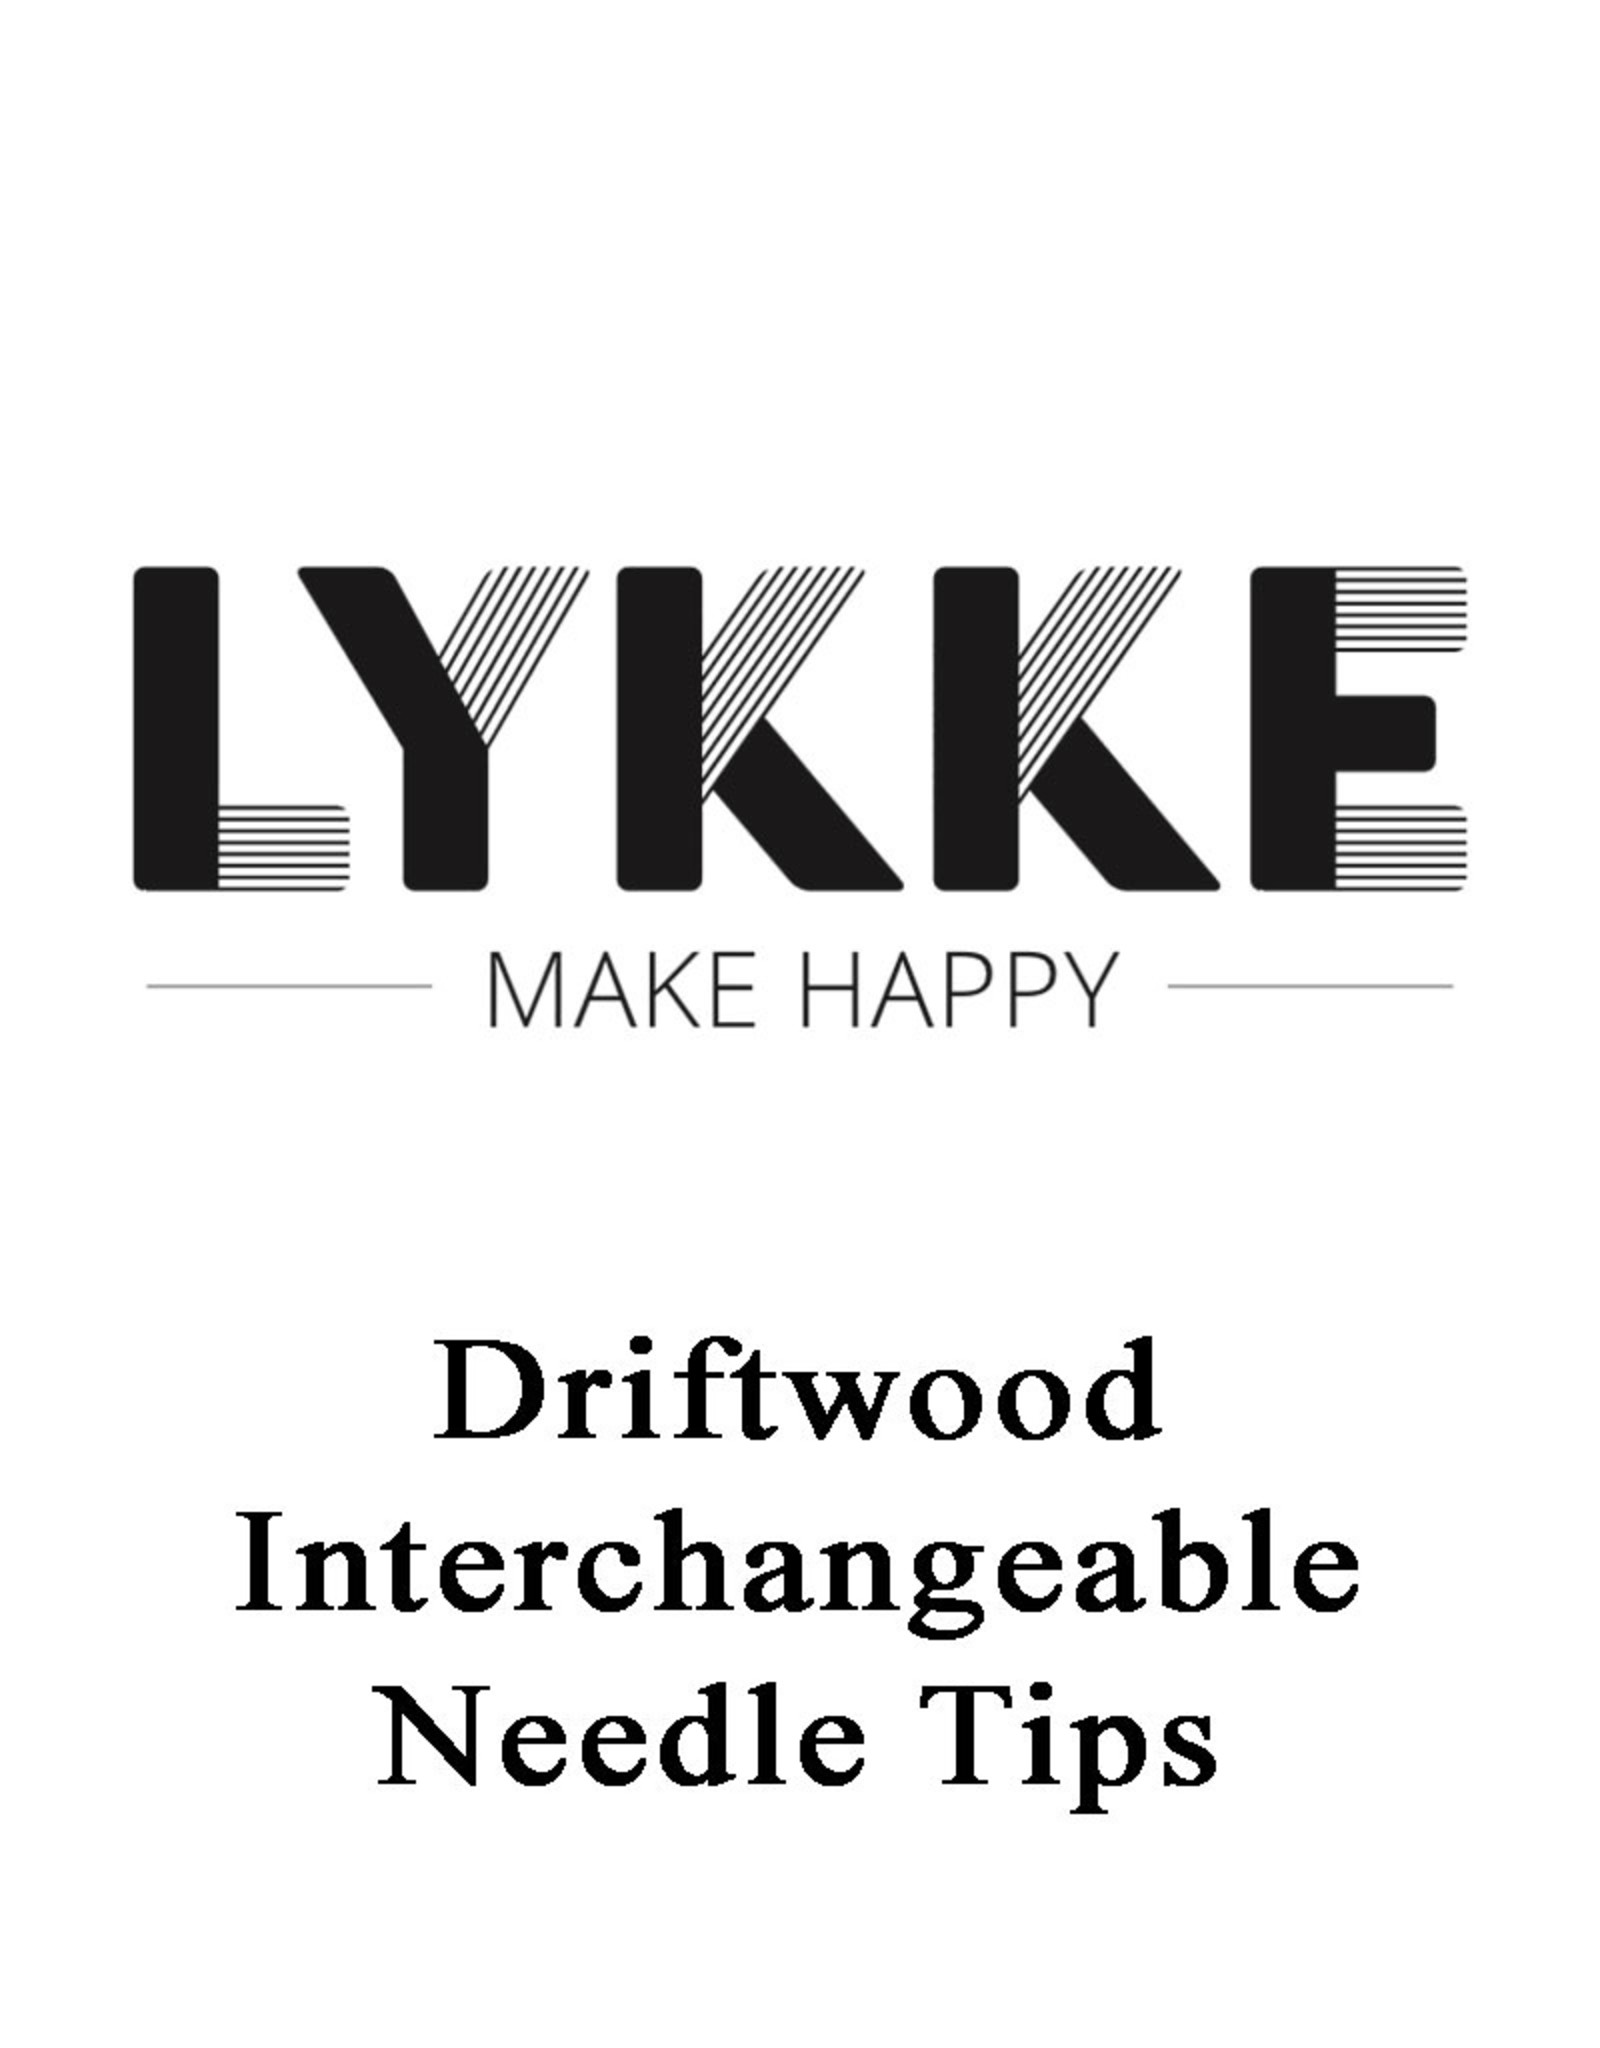 Lykke Driftwood Interchangeable Needle Tips